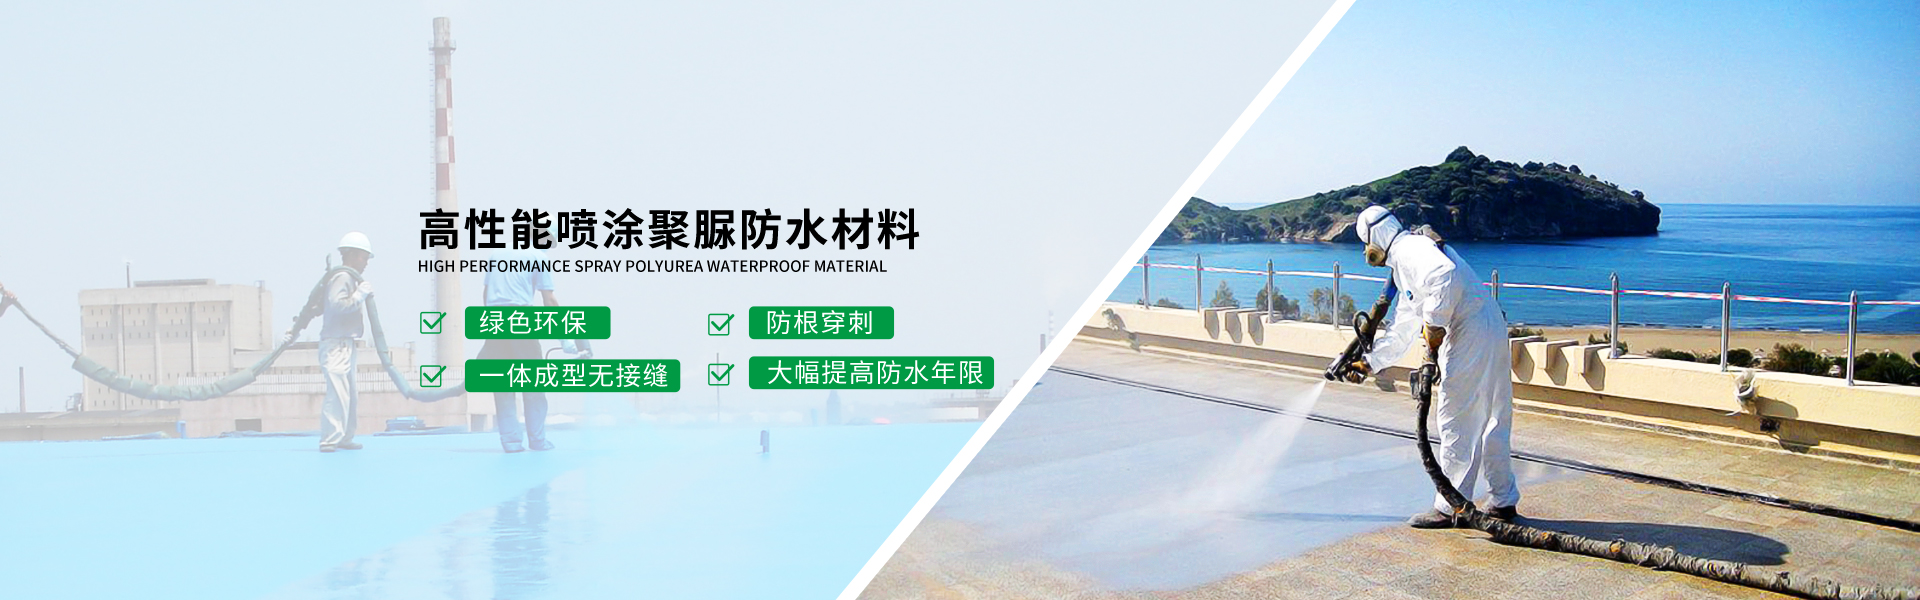 青島海洋新(xin)材料主(zhu)營聚　防水,防水材料等產品